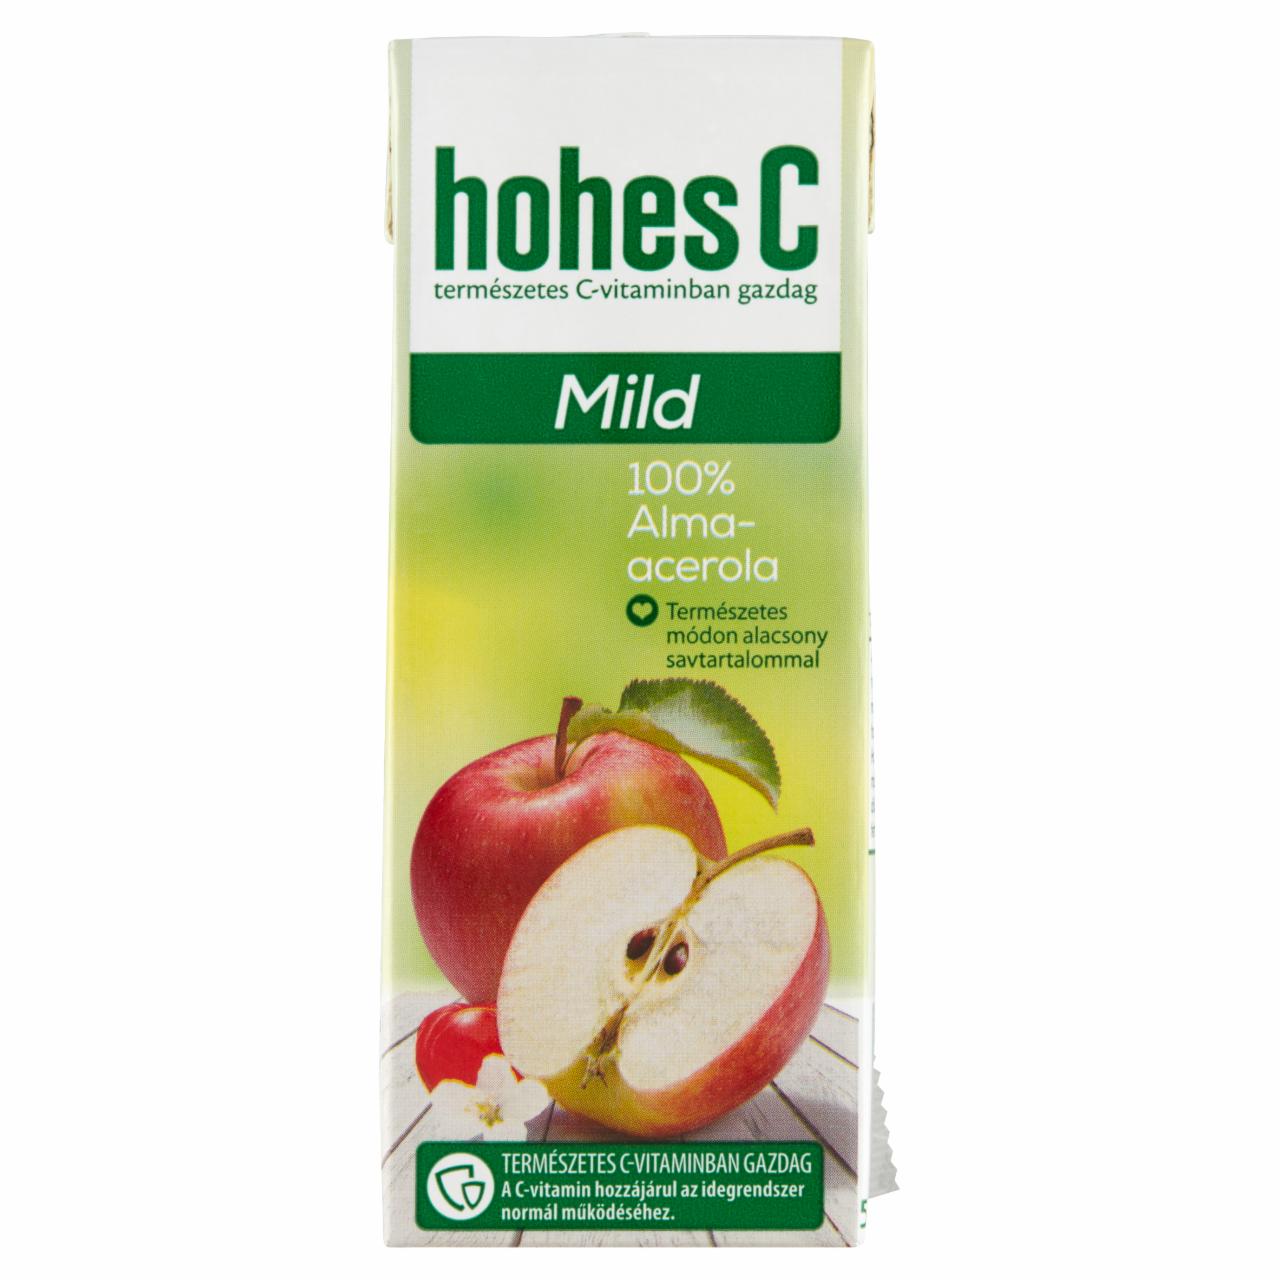 Képek - Hohes C Mild 100% alma-acerola gyümölcslé 0,2 l